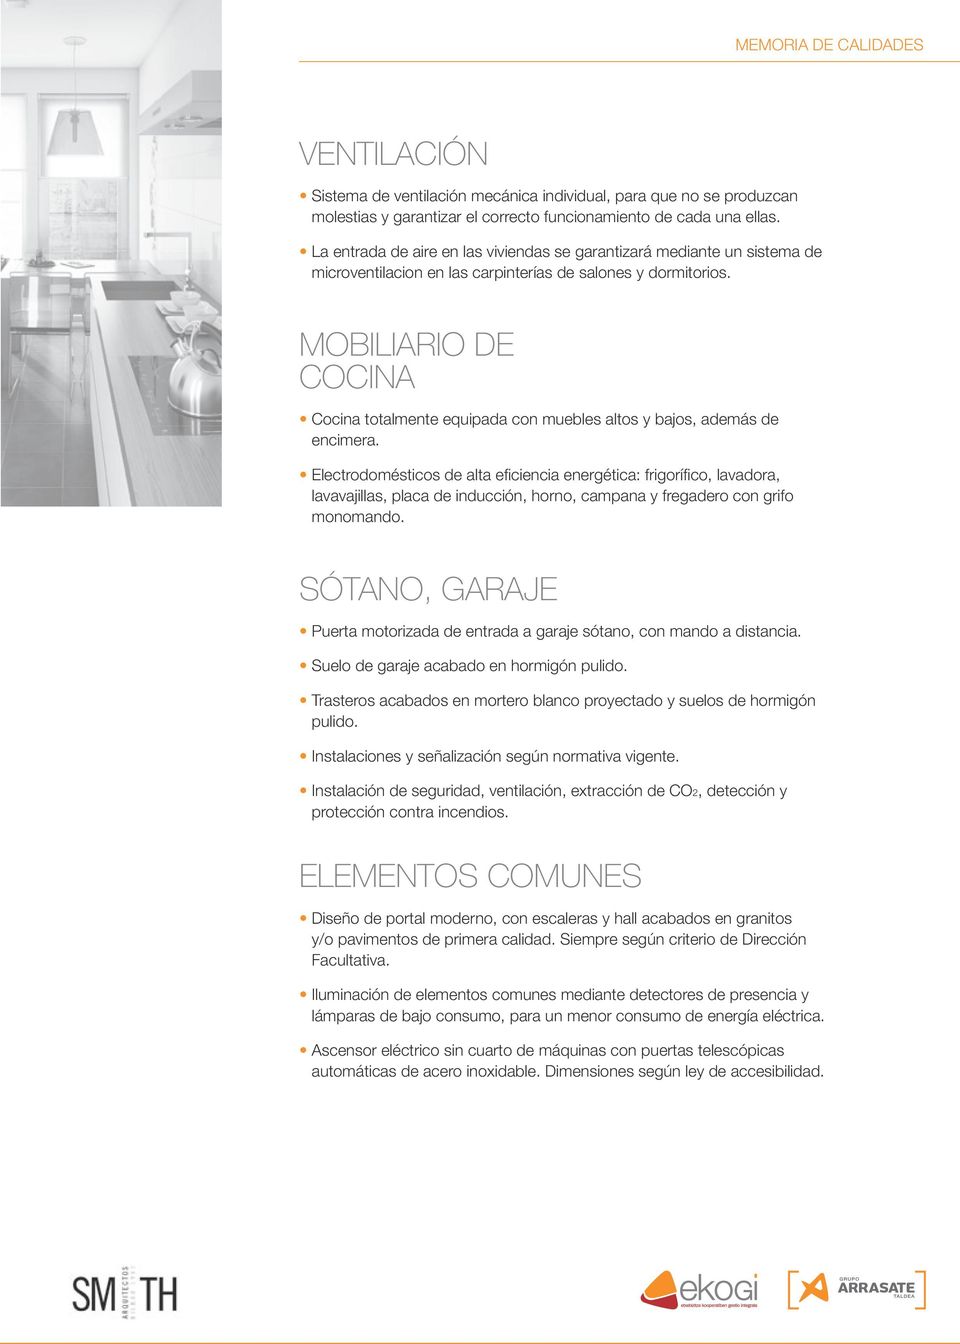 MOBILIARIO DE COCINA Cocina totalmente equipada con muebles altos y bajos, además de encimera.